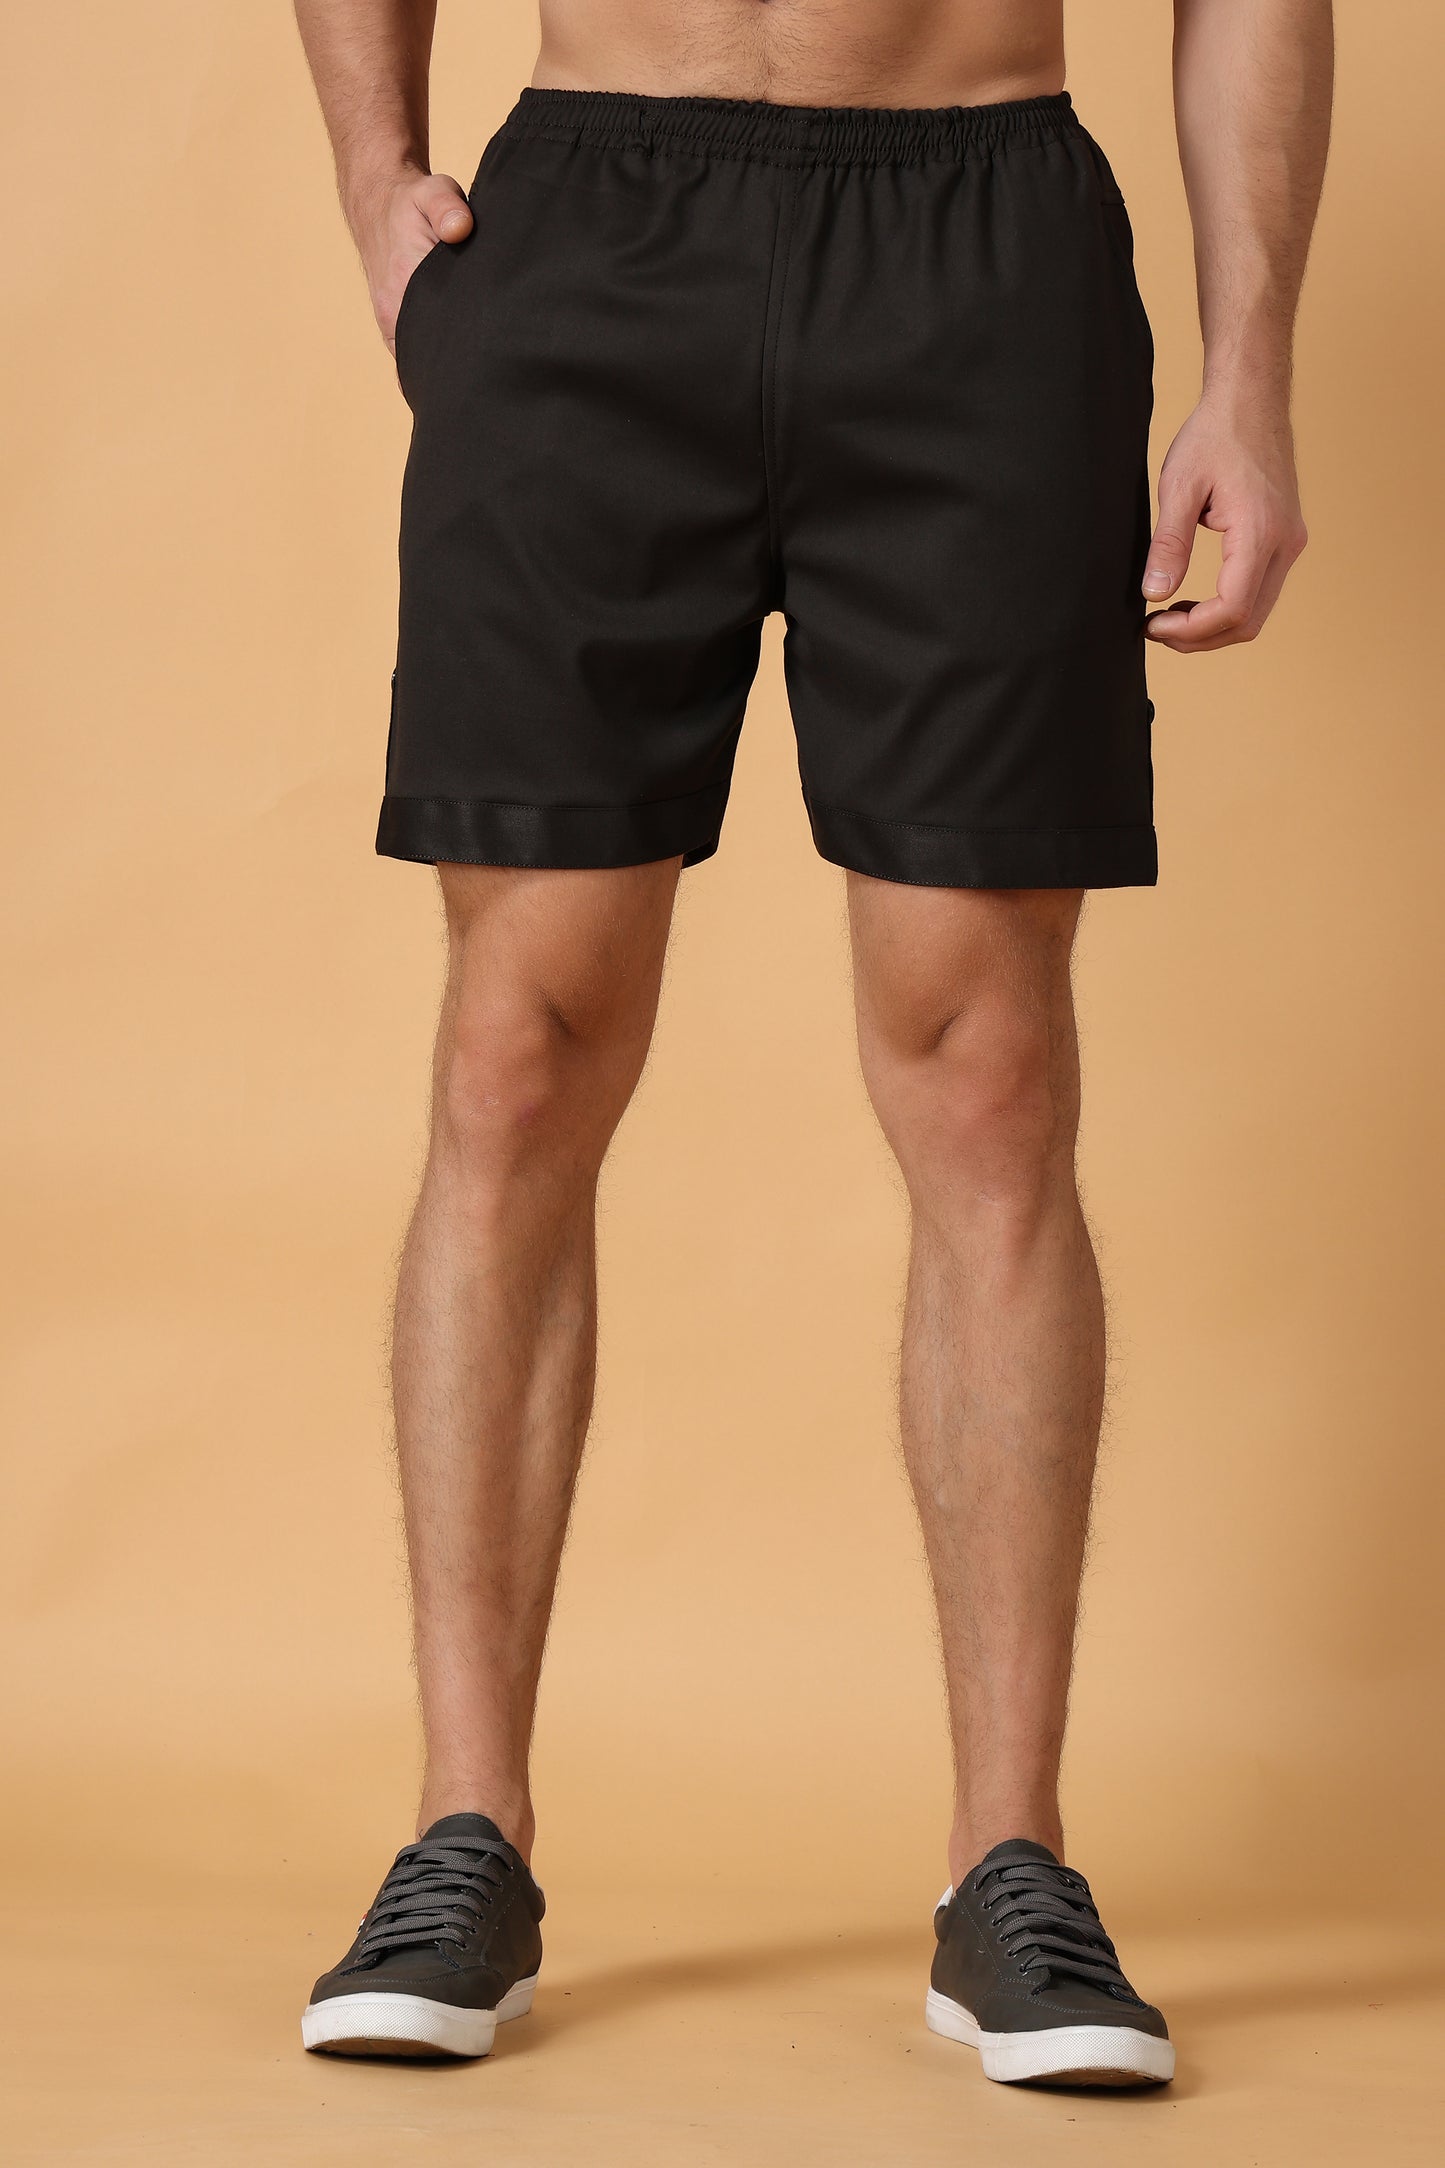 Smoky Black Cotton Lycra Shorts